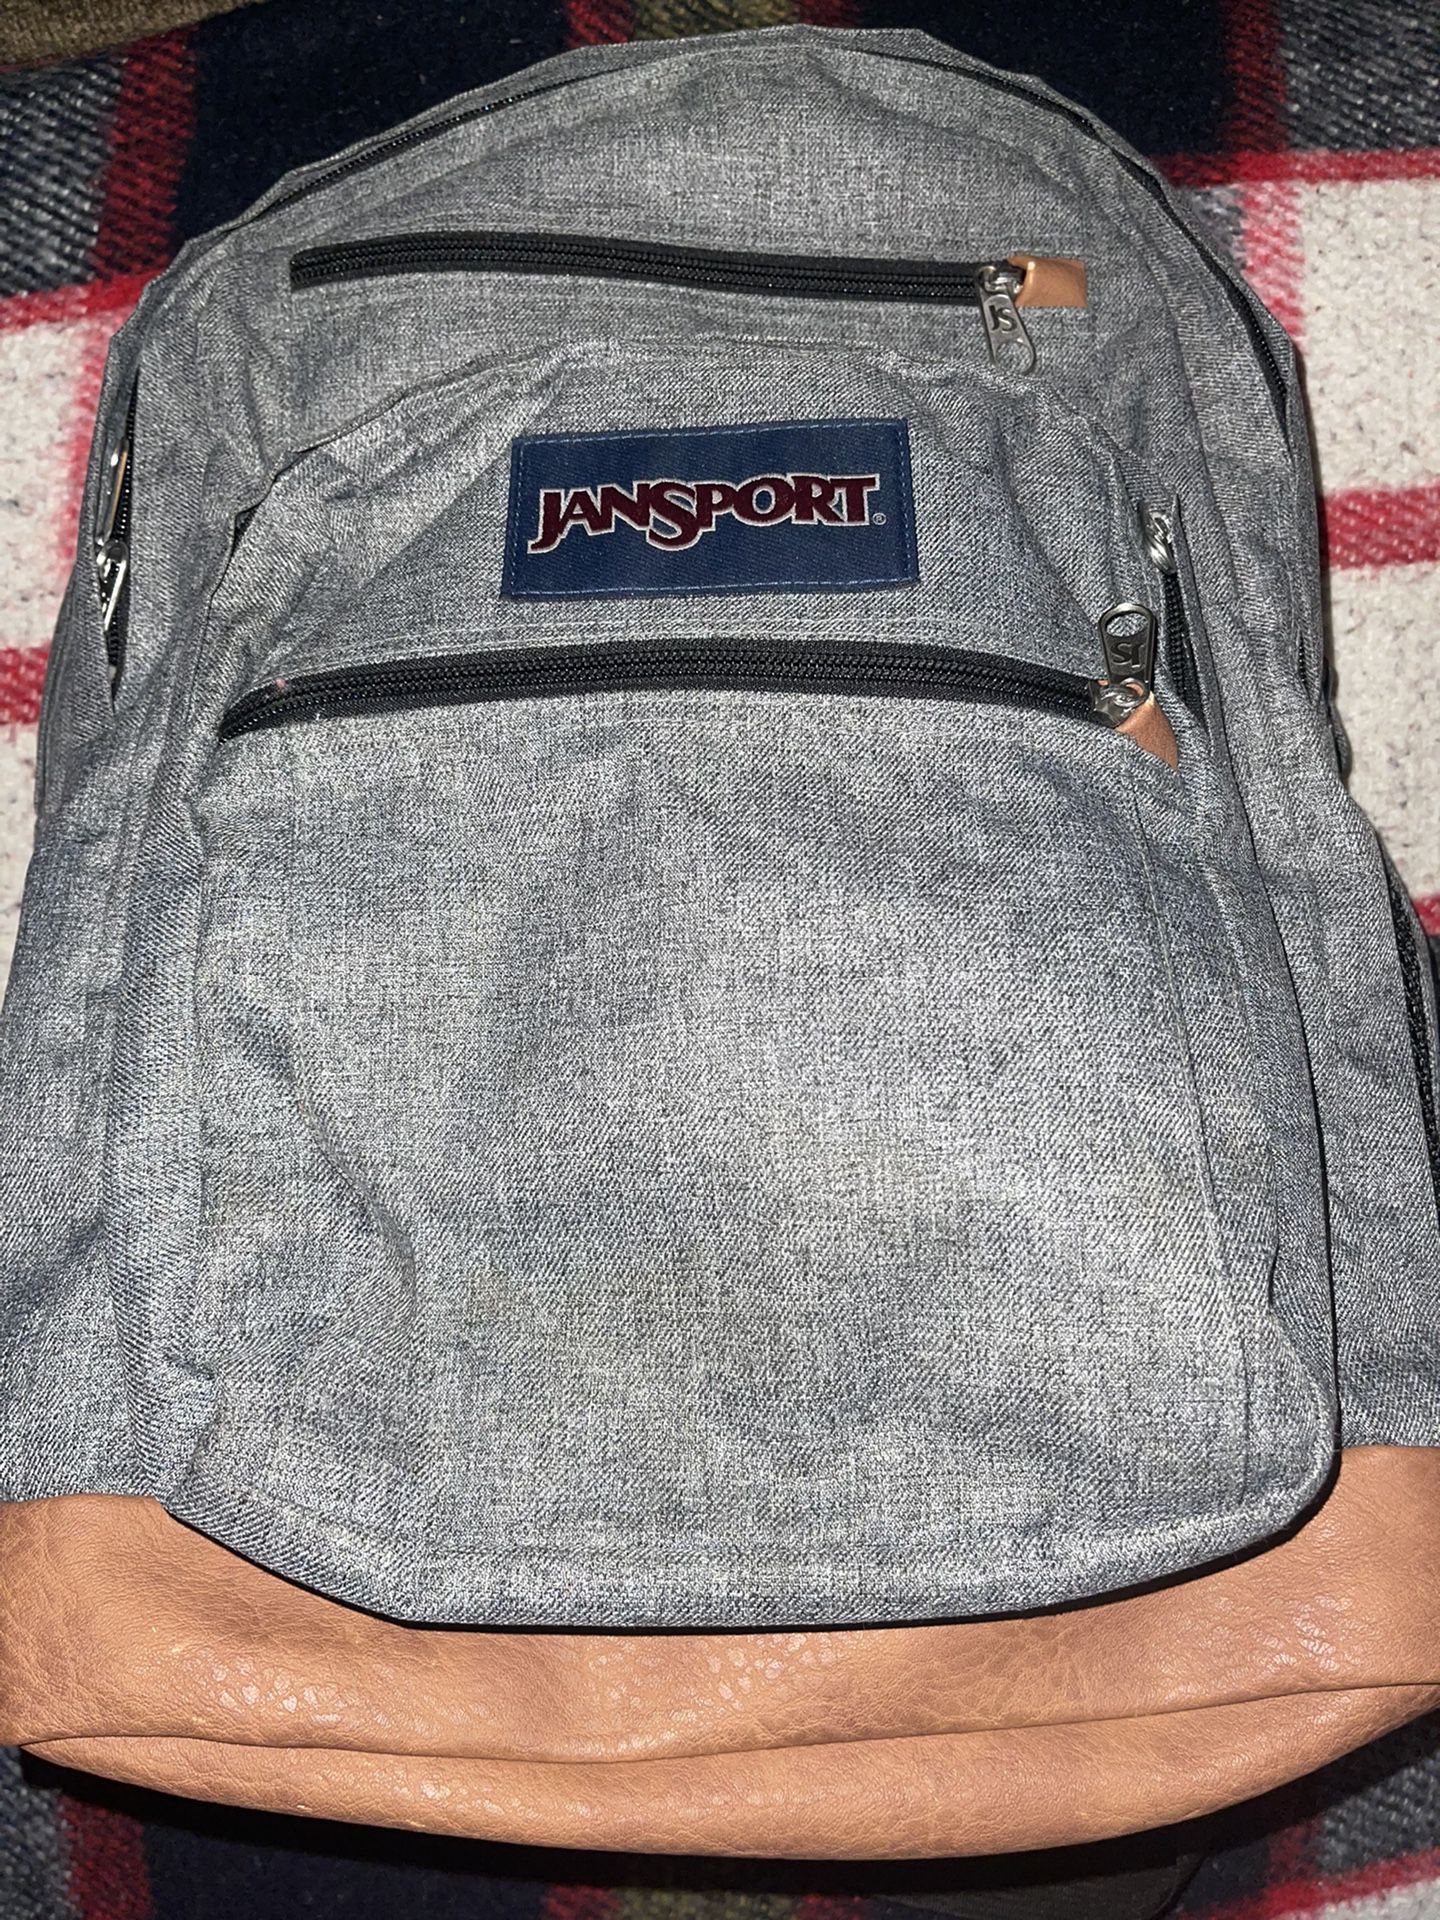 Jansport Bag pack 